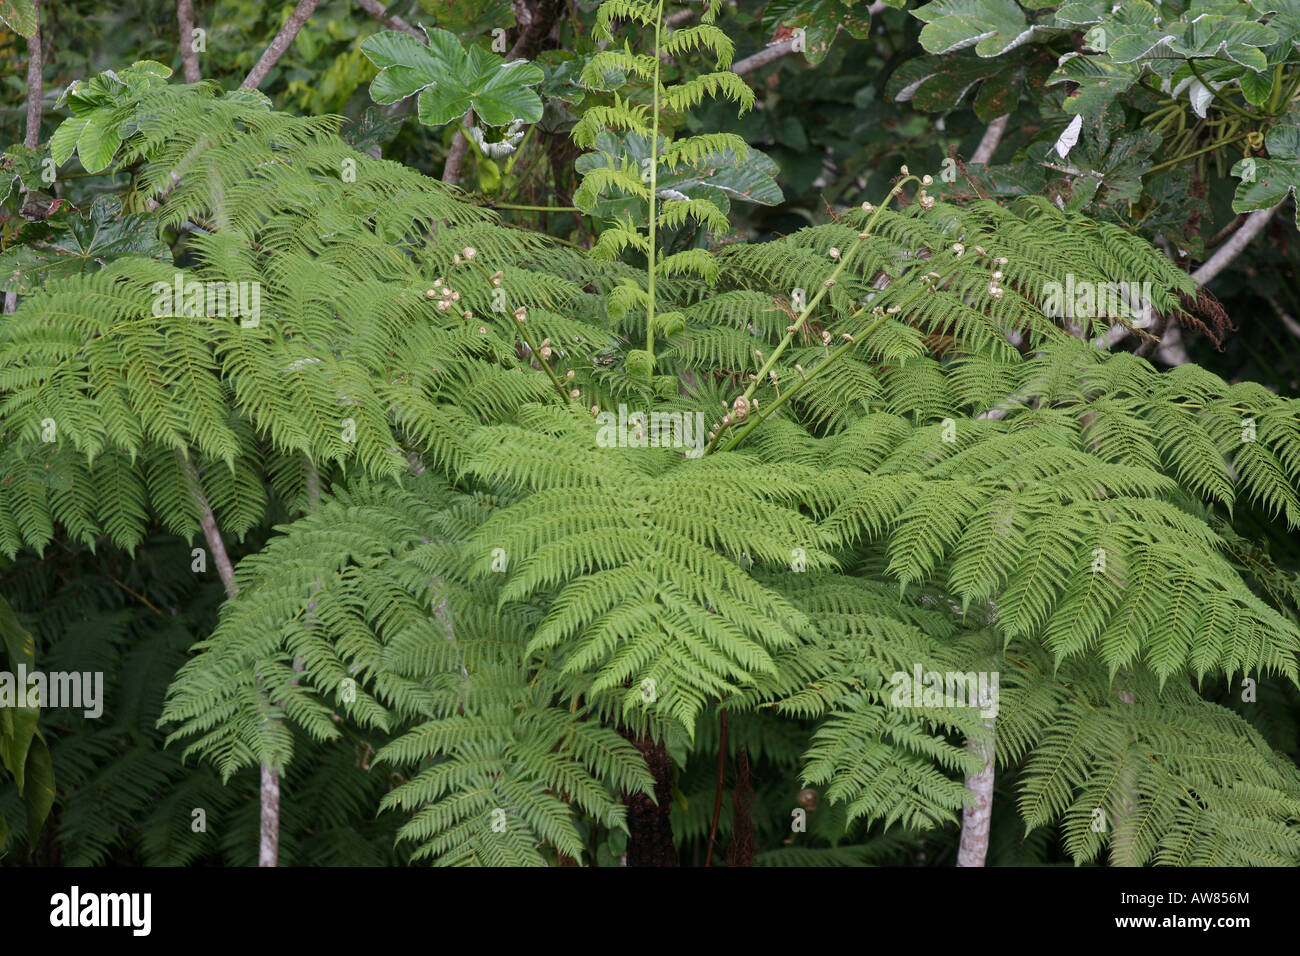 Foresta Pluviale di El Yunque puerto rico tree fern Foto Stock